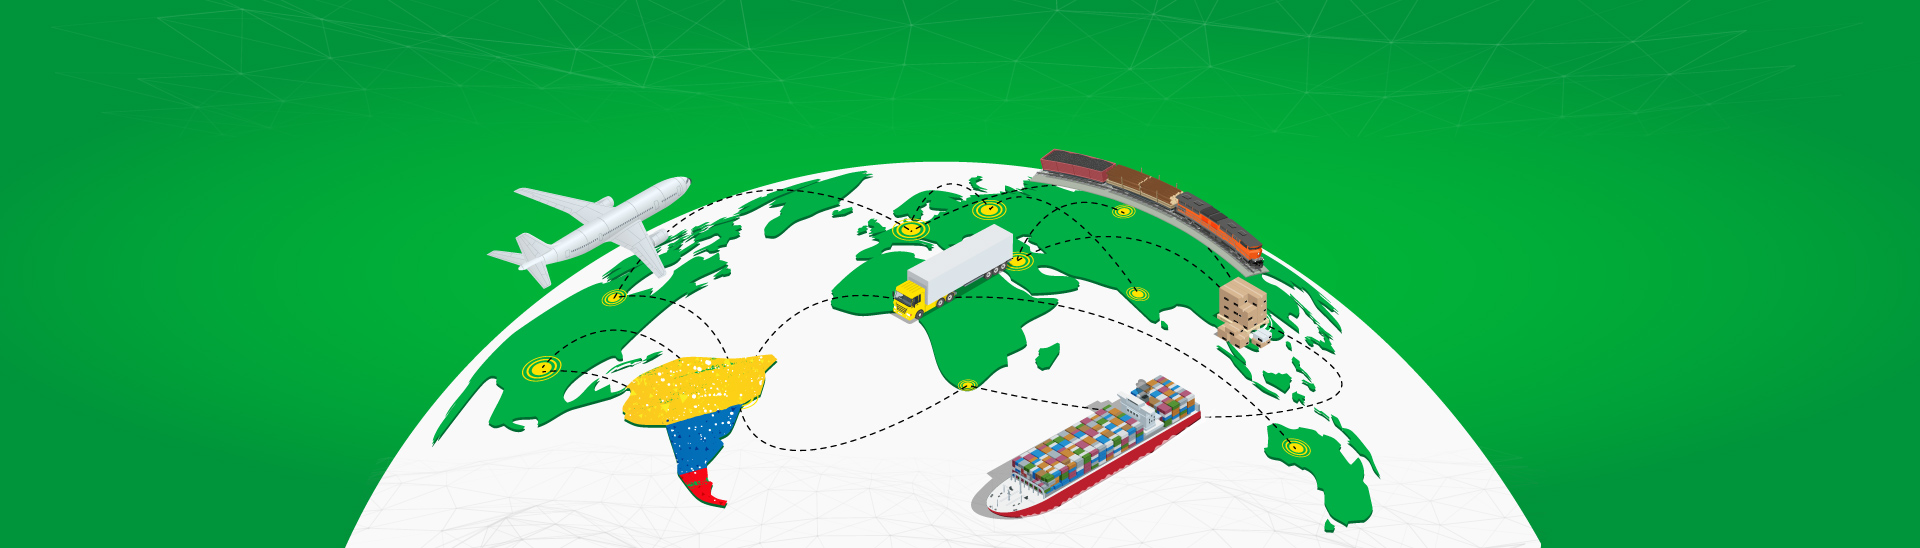 Congreso ‘El futuro de las cadenas productivas y el Supply Chain para Colombia y Latinoamérica’ 